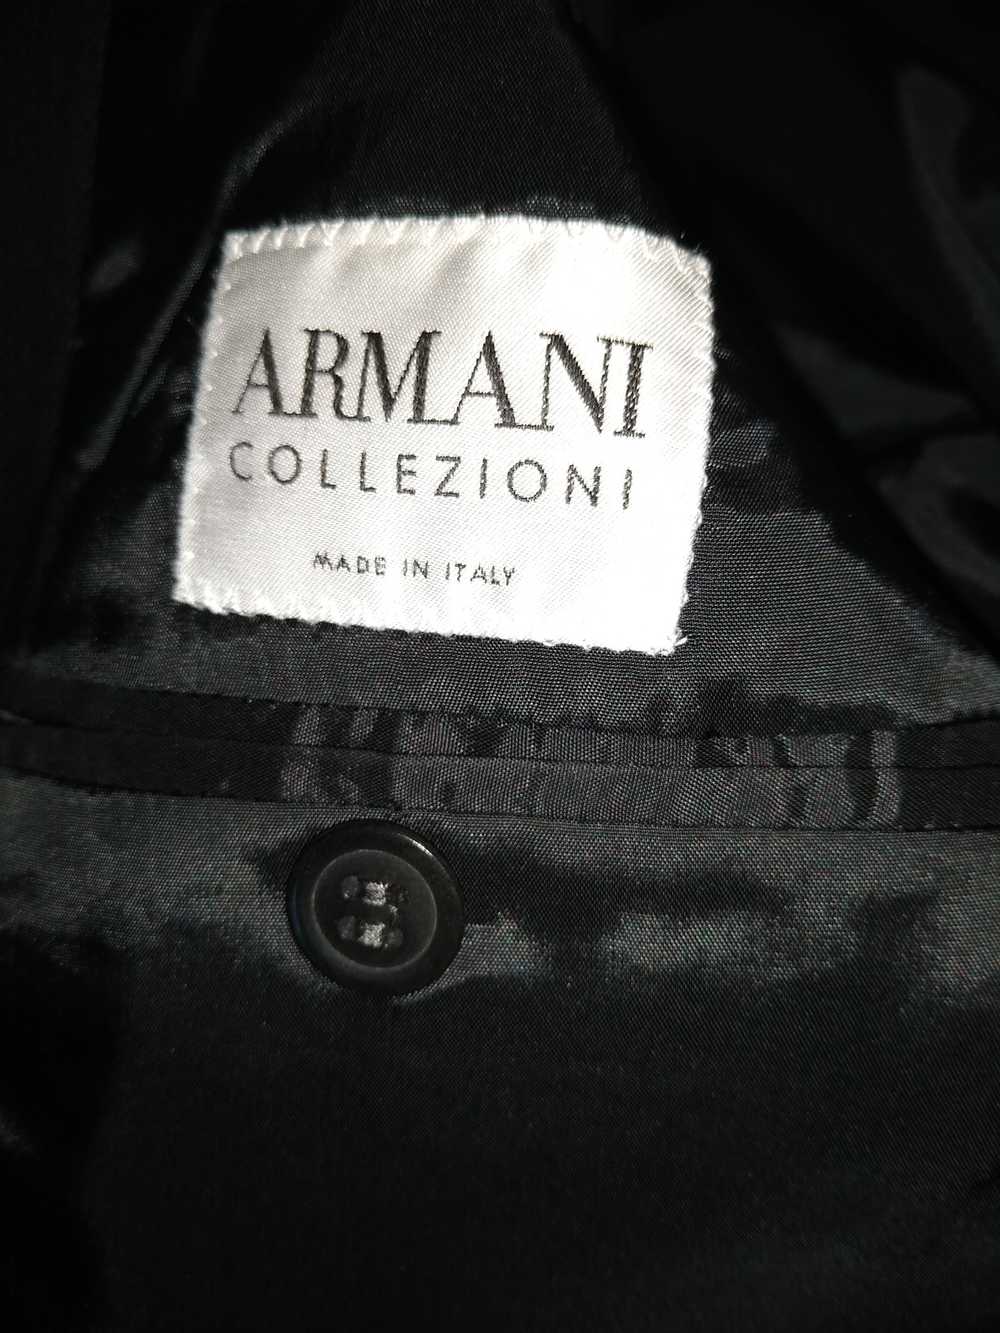 Giorgio Armani 2 Button Pinstriped Suit - image 4